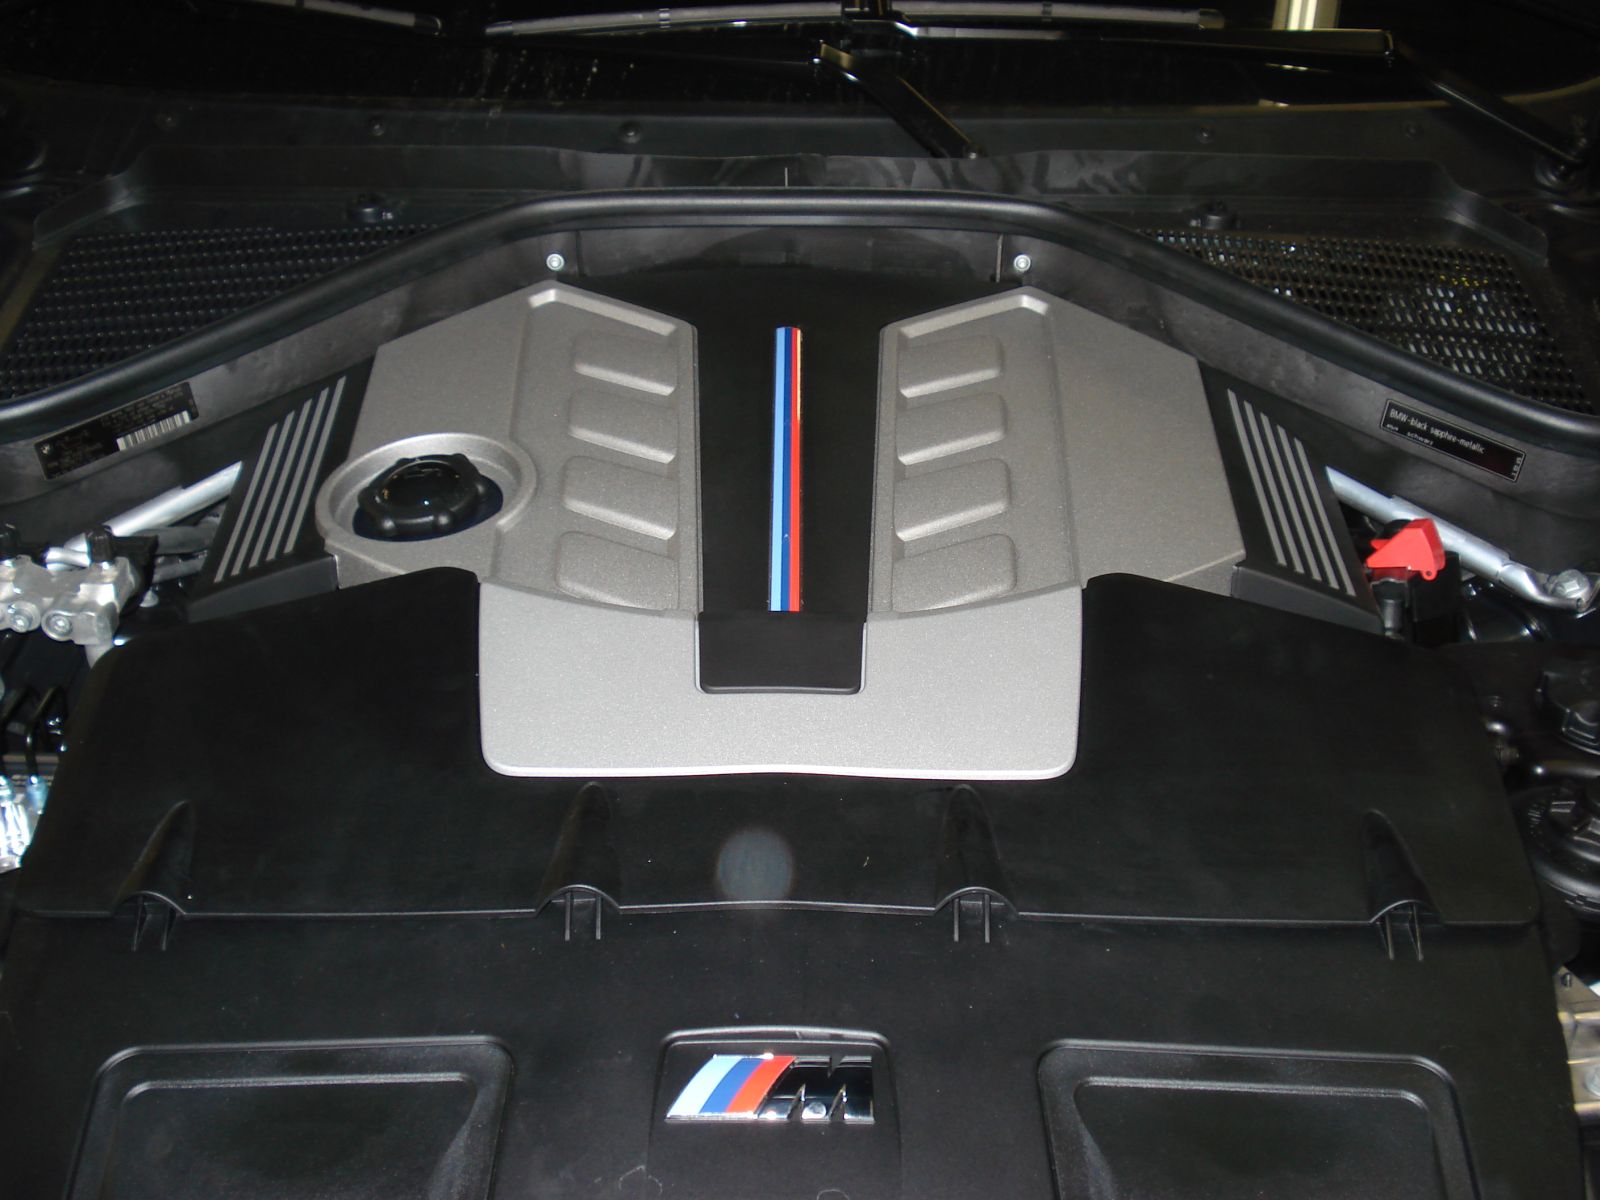 BMW X5 M engine